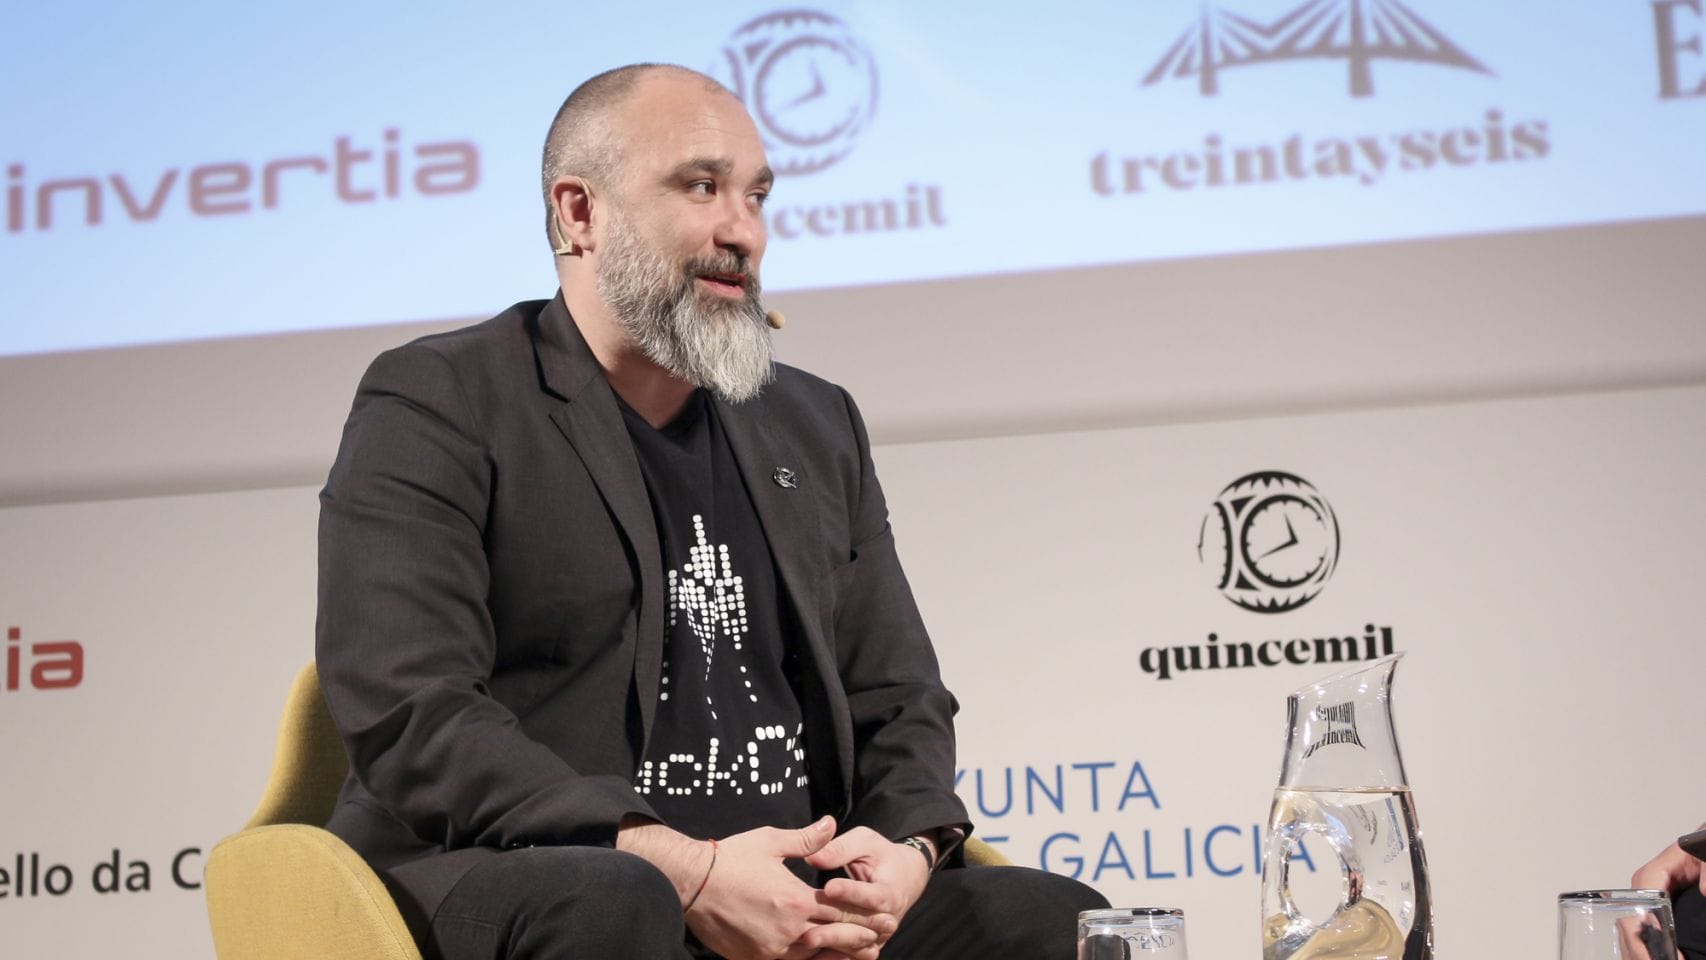 Antonio Fernandes, hacker gallego en el III Foro Económico Galicia.